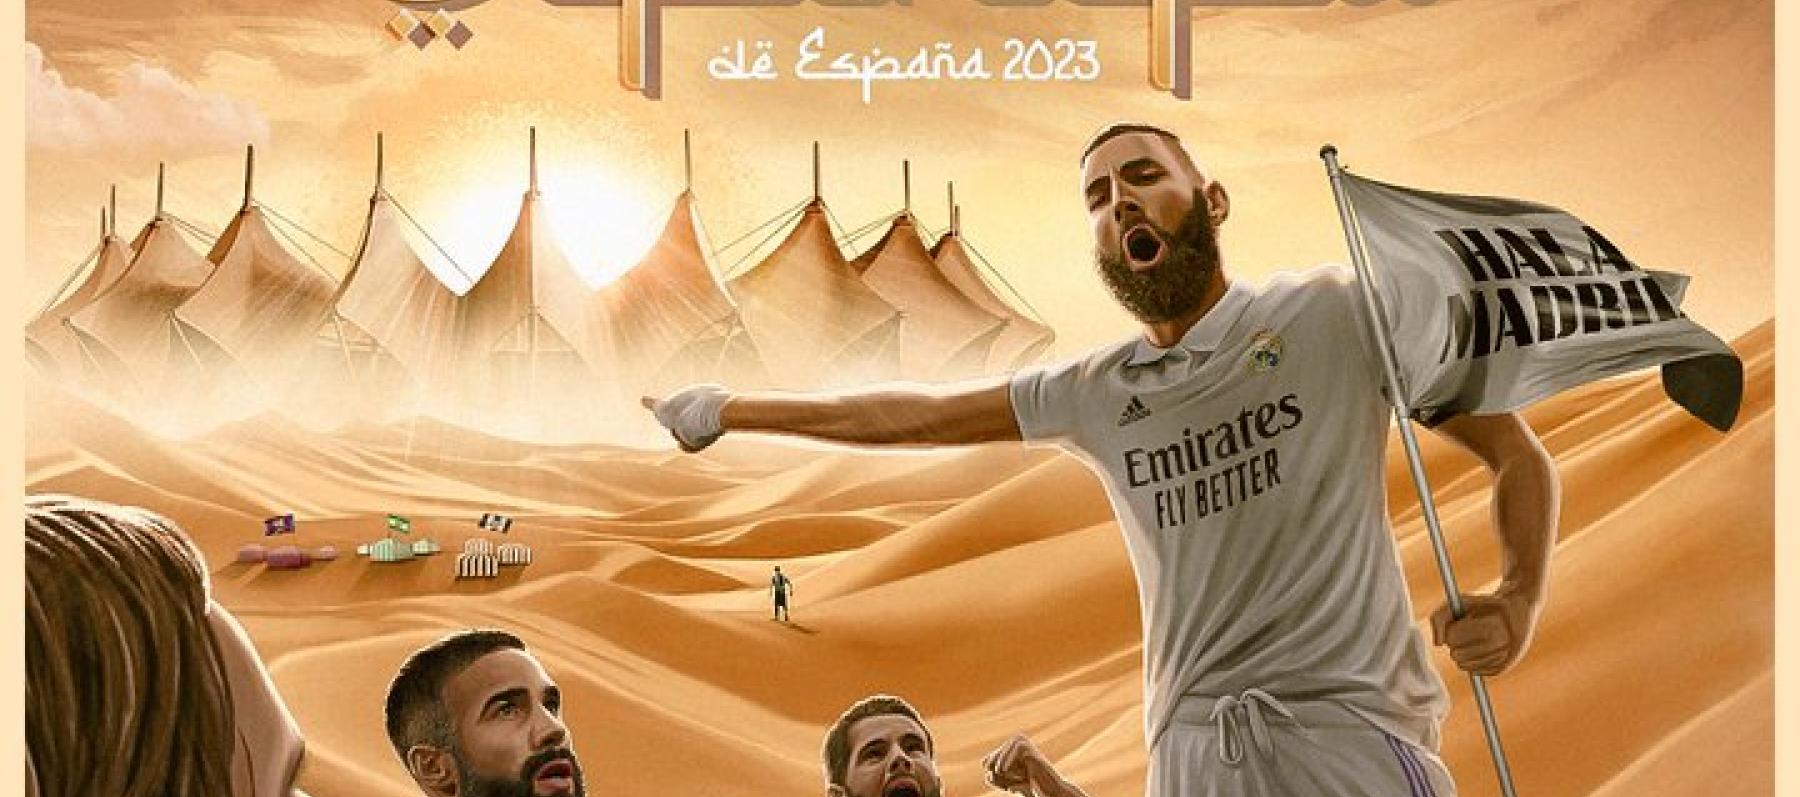 بوستر ريال مدريد لكأس السوبر في الرياض - تويتر